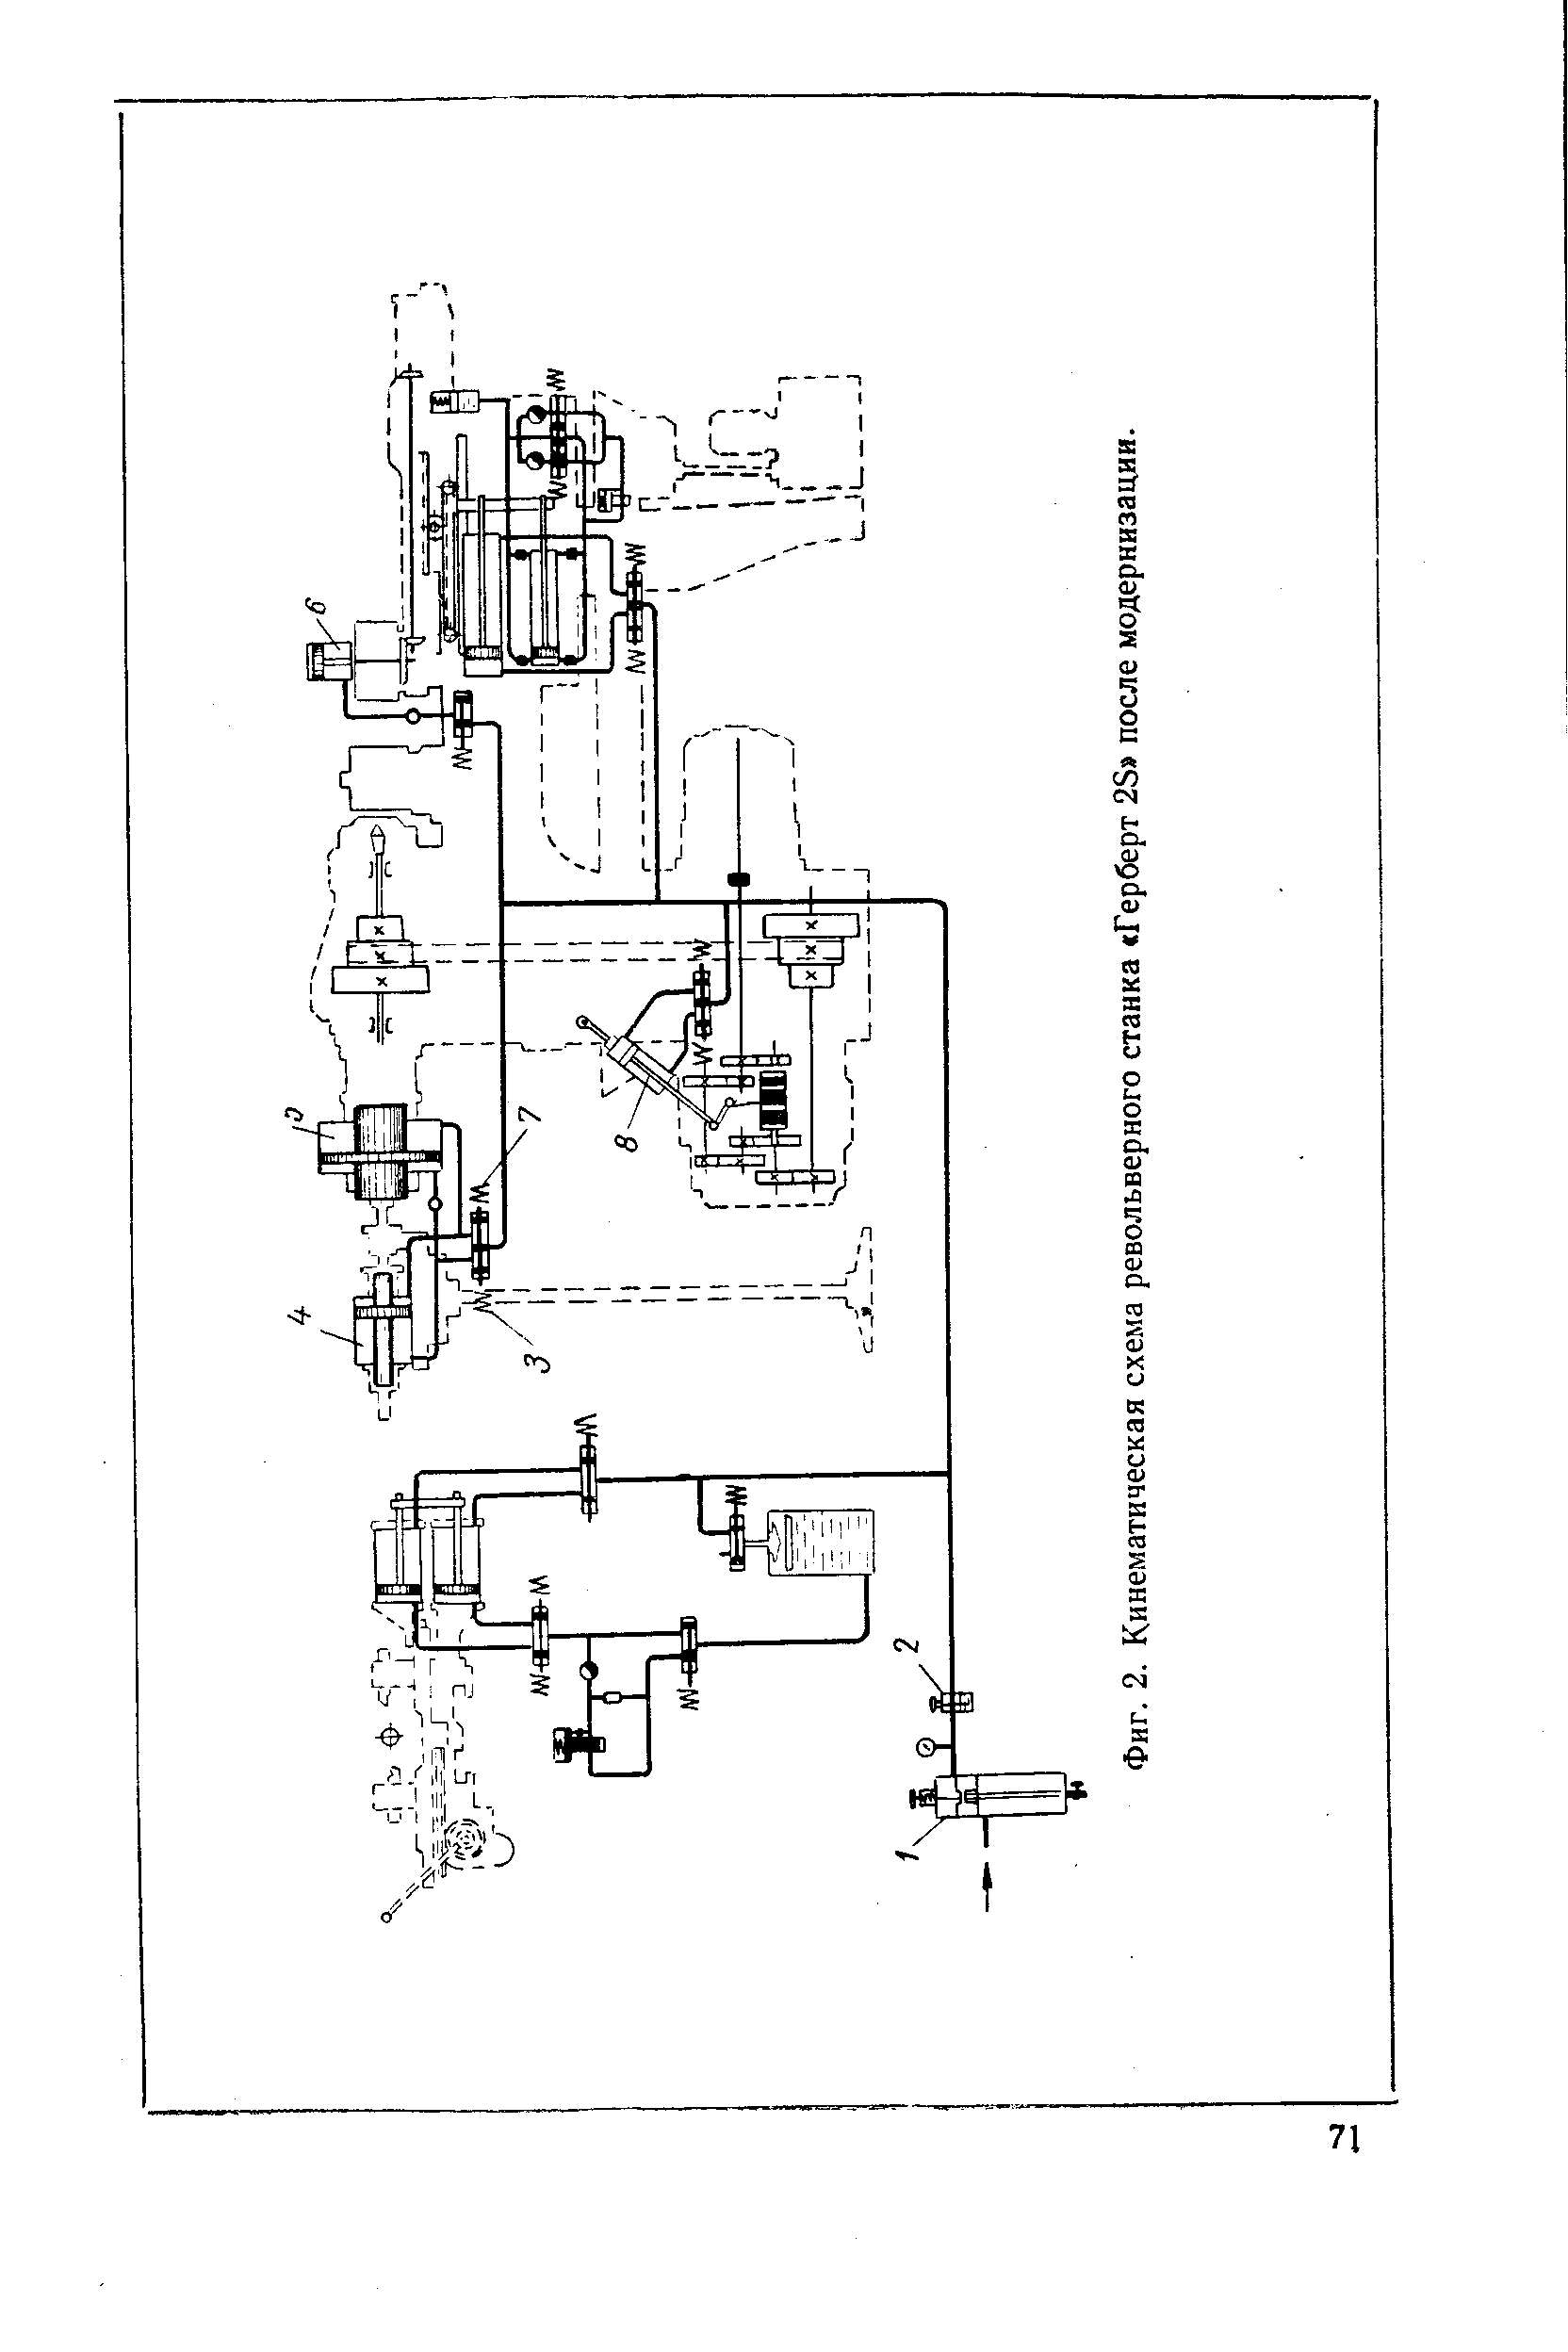 Фиг. 2. Кинематическая схема револьверного станка Герберт 25 после модернизаили.